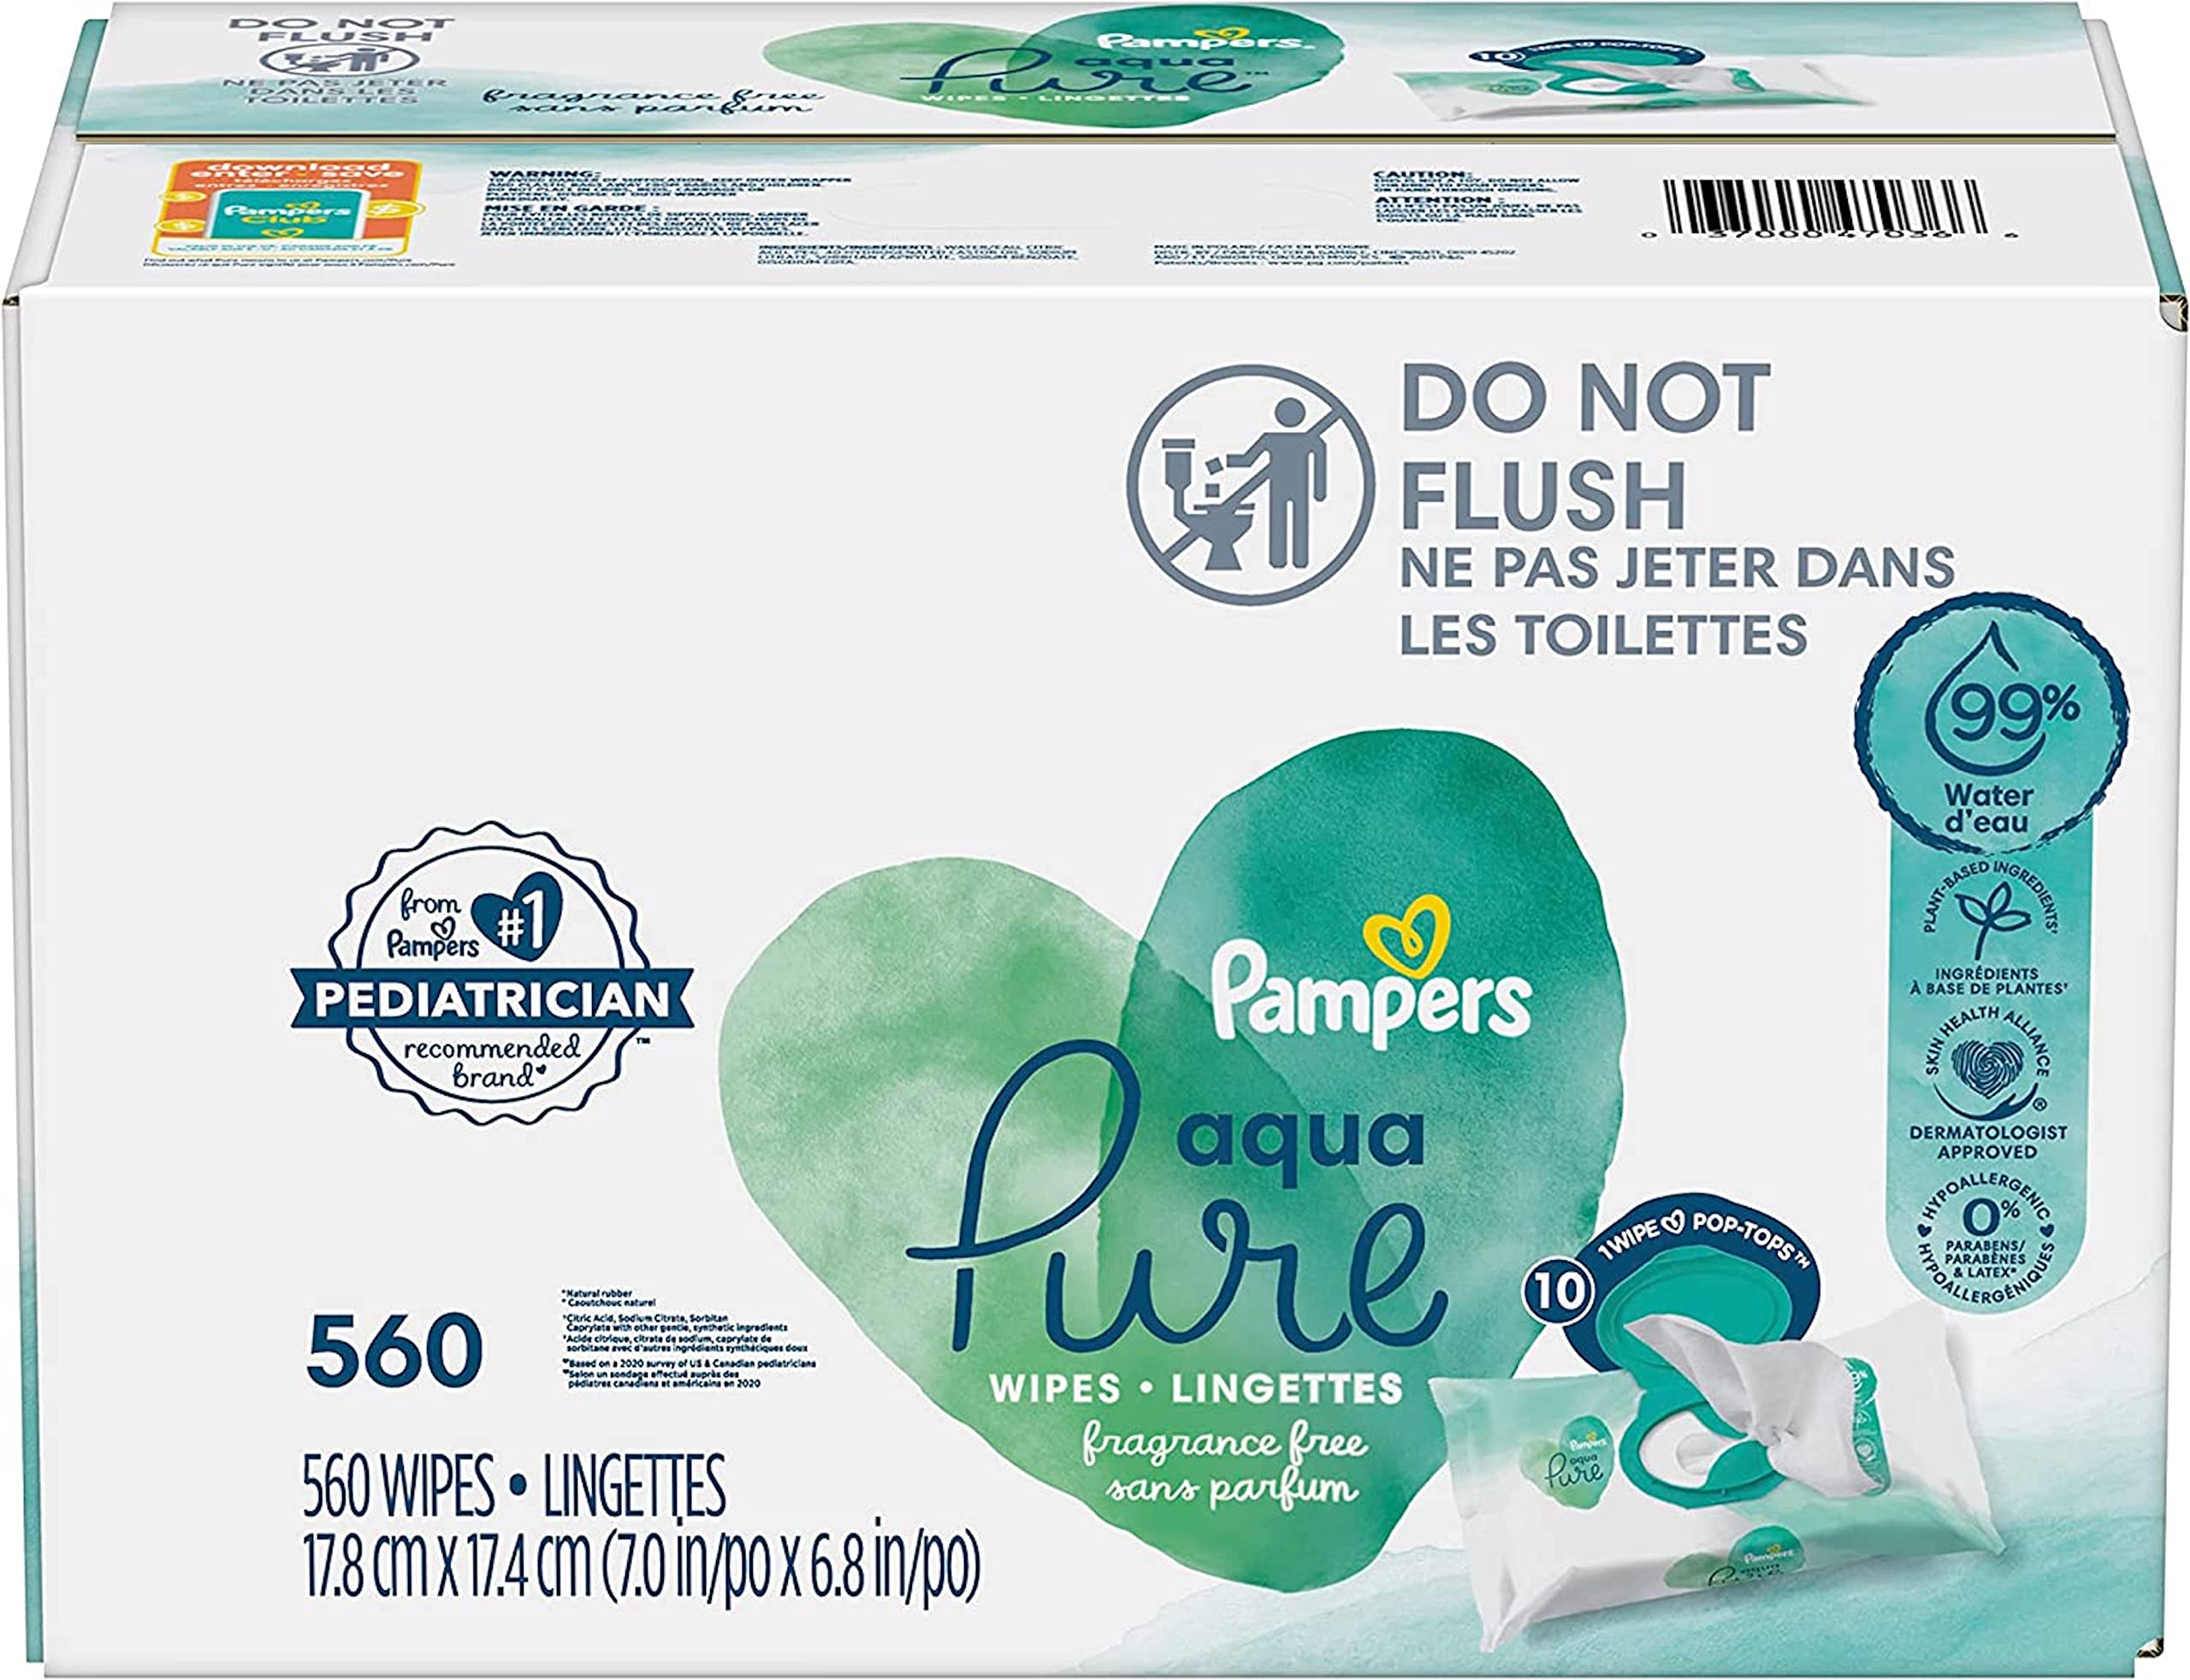  Pampers Pure Protection - Pañales desechables para bebé,  tamaños 1 (198 unidades) y 2 (186 unidades) con toallitas Aqua Pure, 10  paquetes Pop-Top (560 unidades) : Bebés